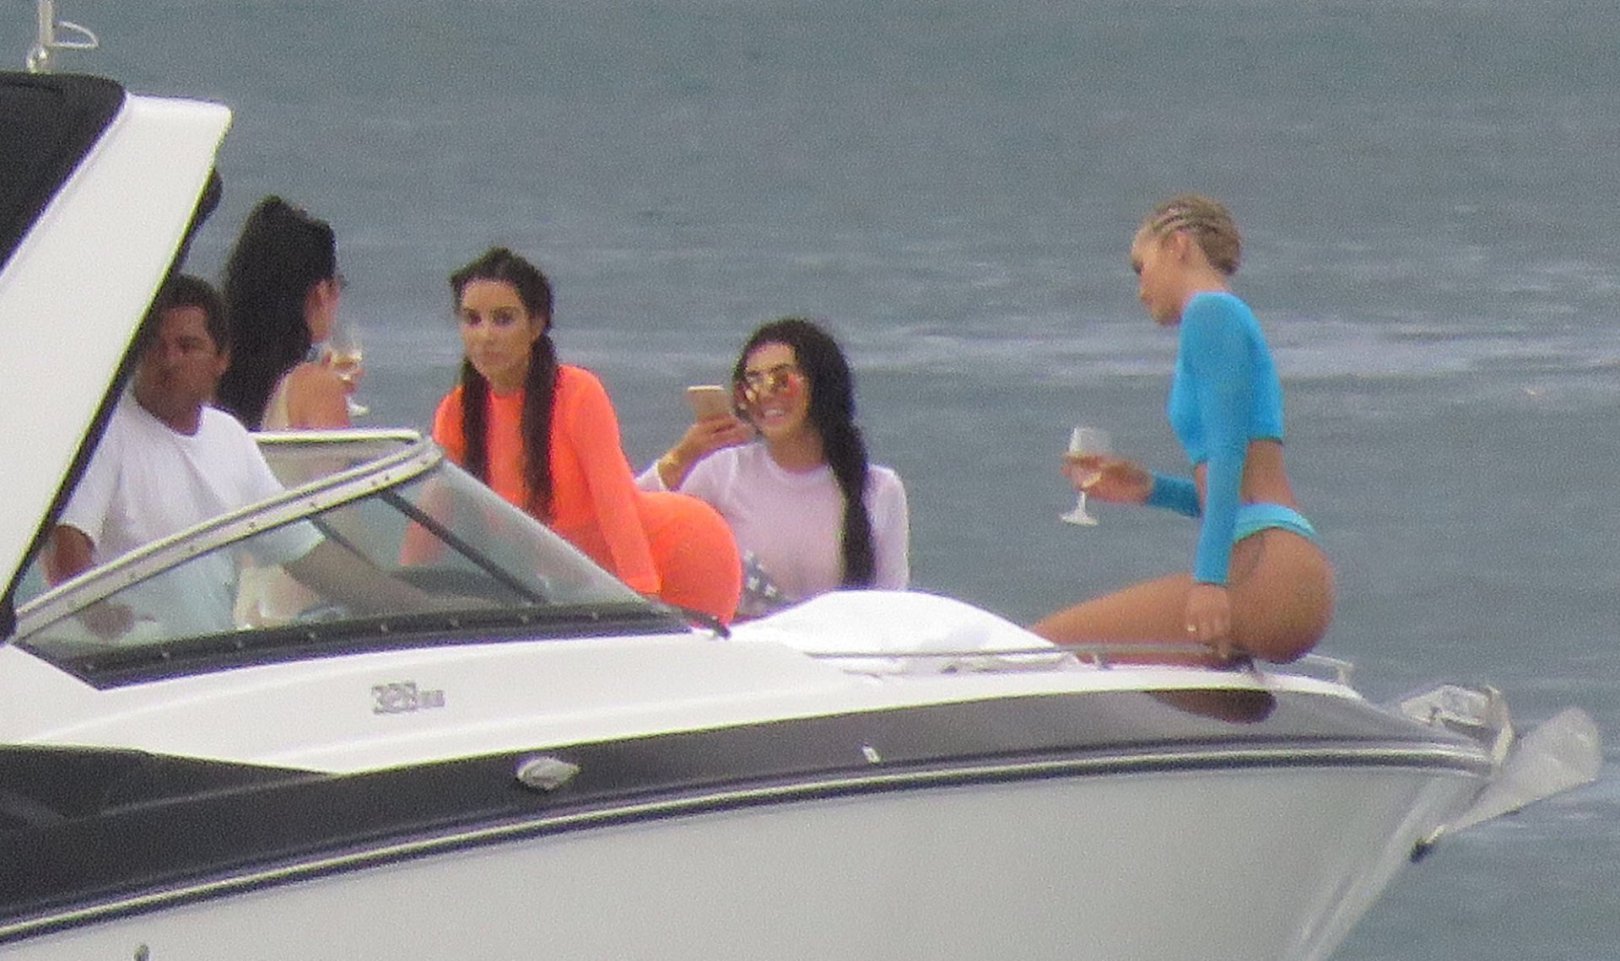 Ким Кардашьян с подругами на яхте выпивали и фотографировали попки друг друга